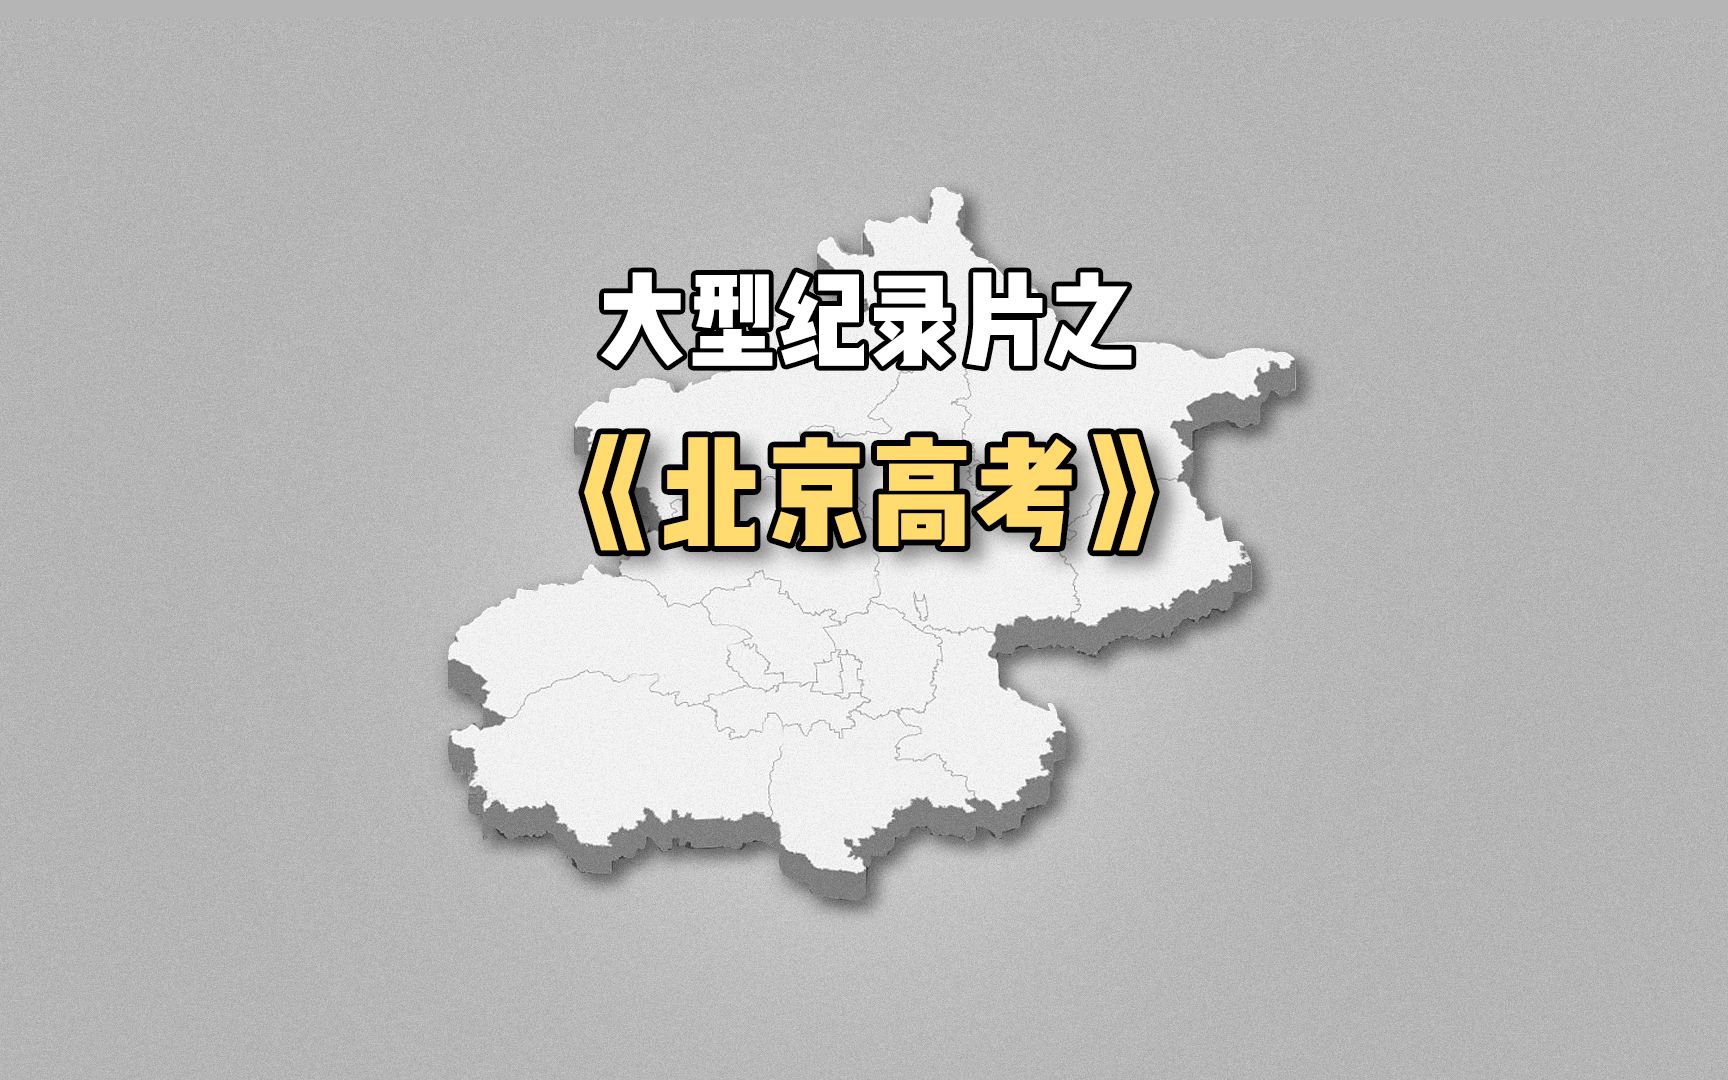 大型纪录片之《北京高考传奇》为您播出！